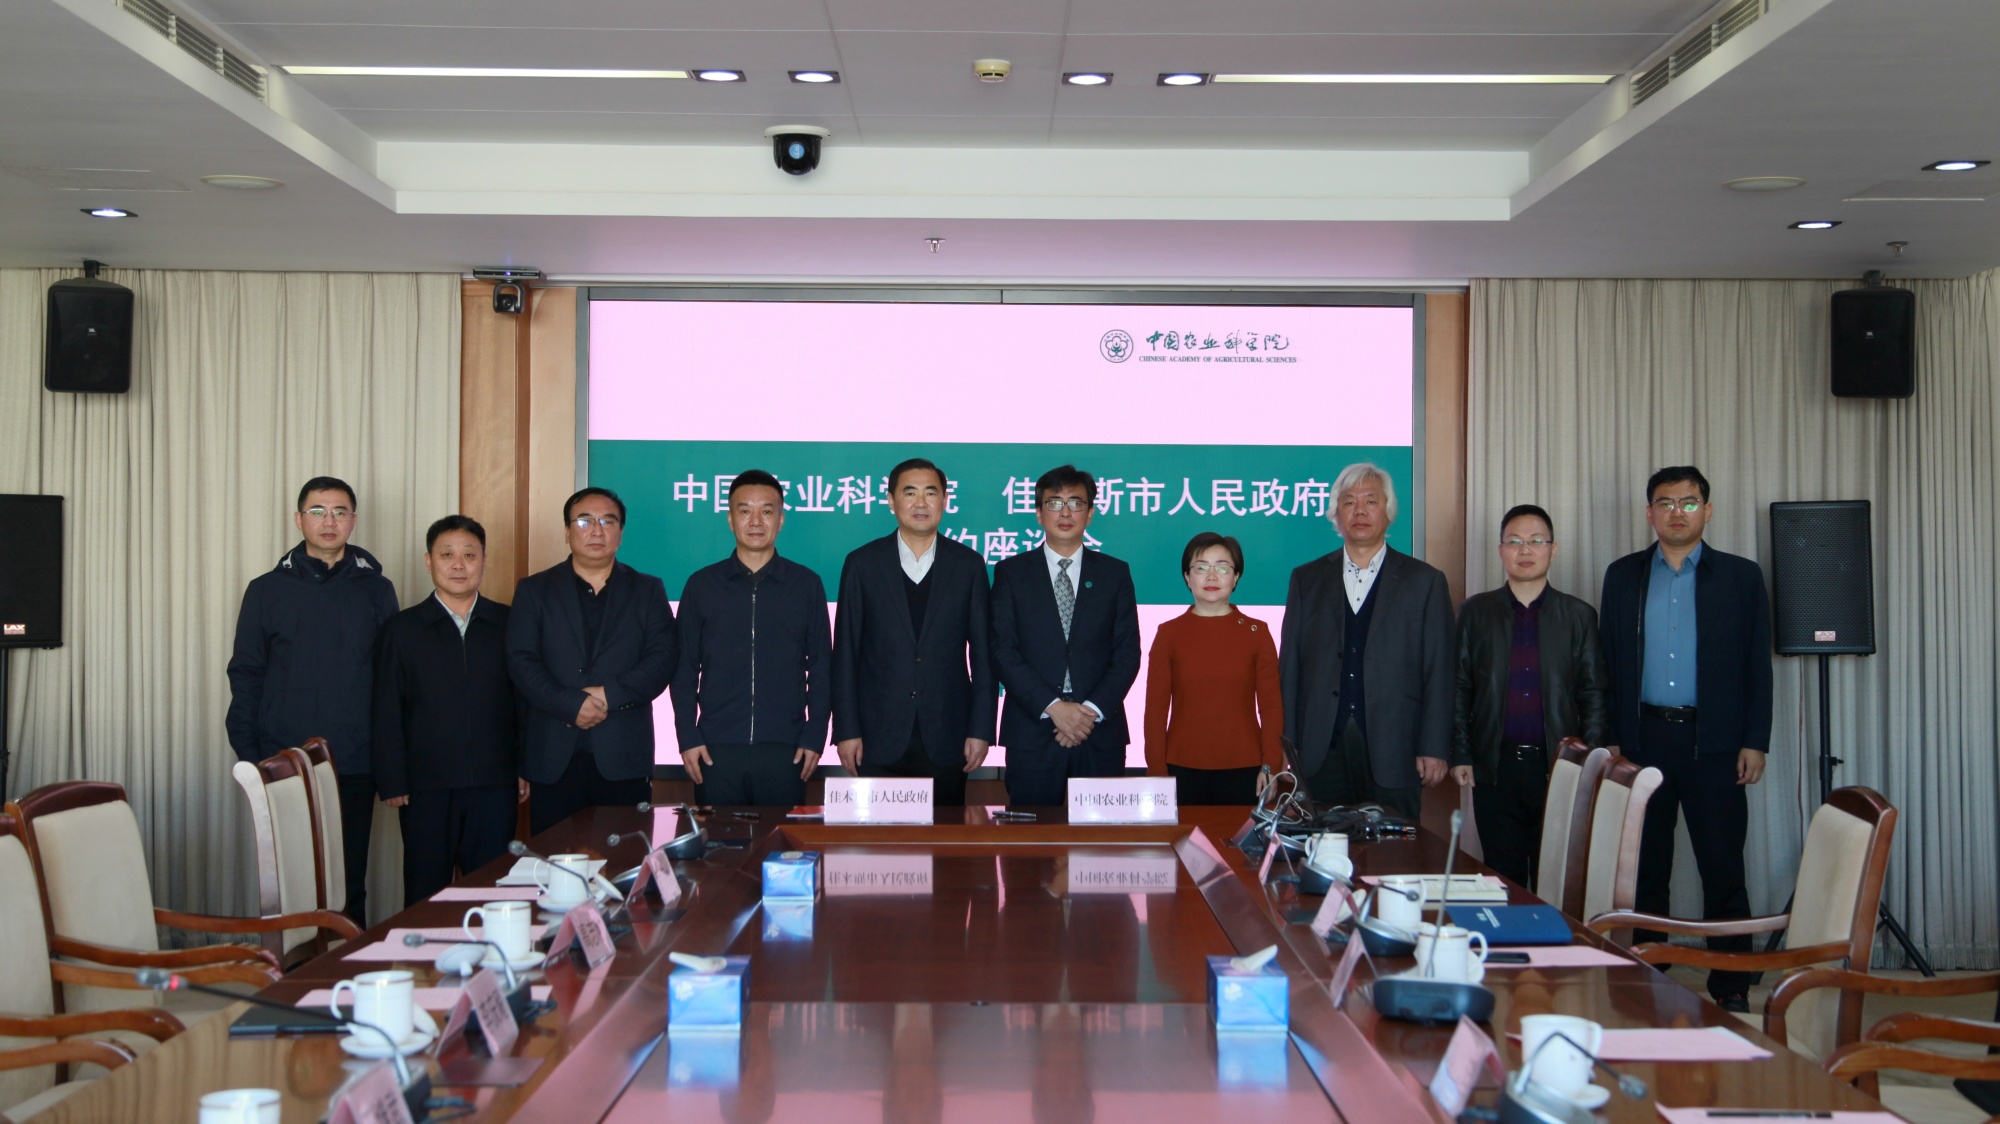 佳木斯市政府与中国农业科学院签约共建国家农高区